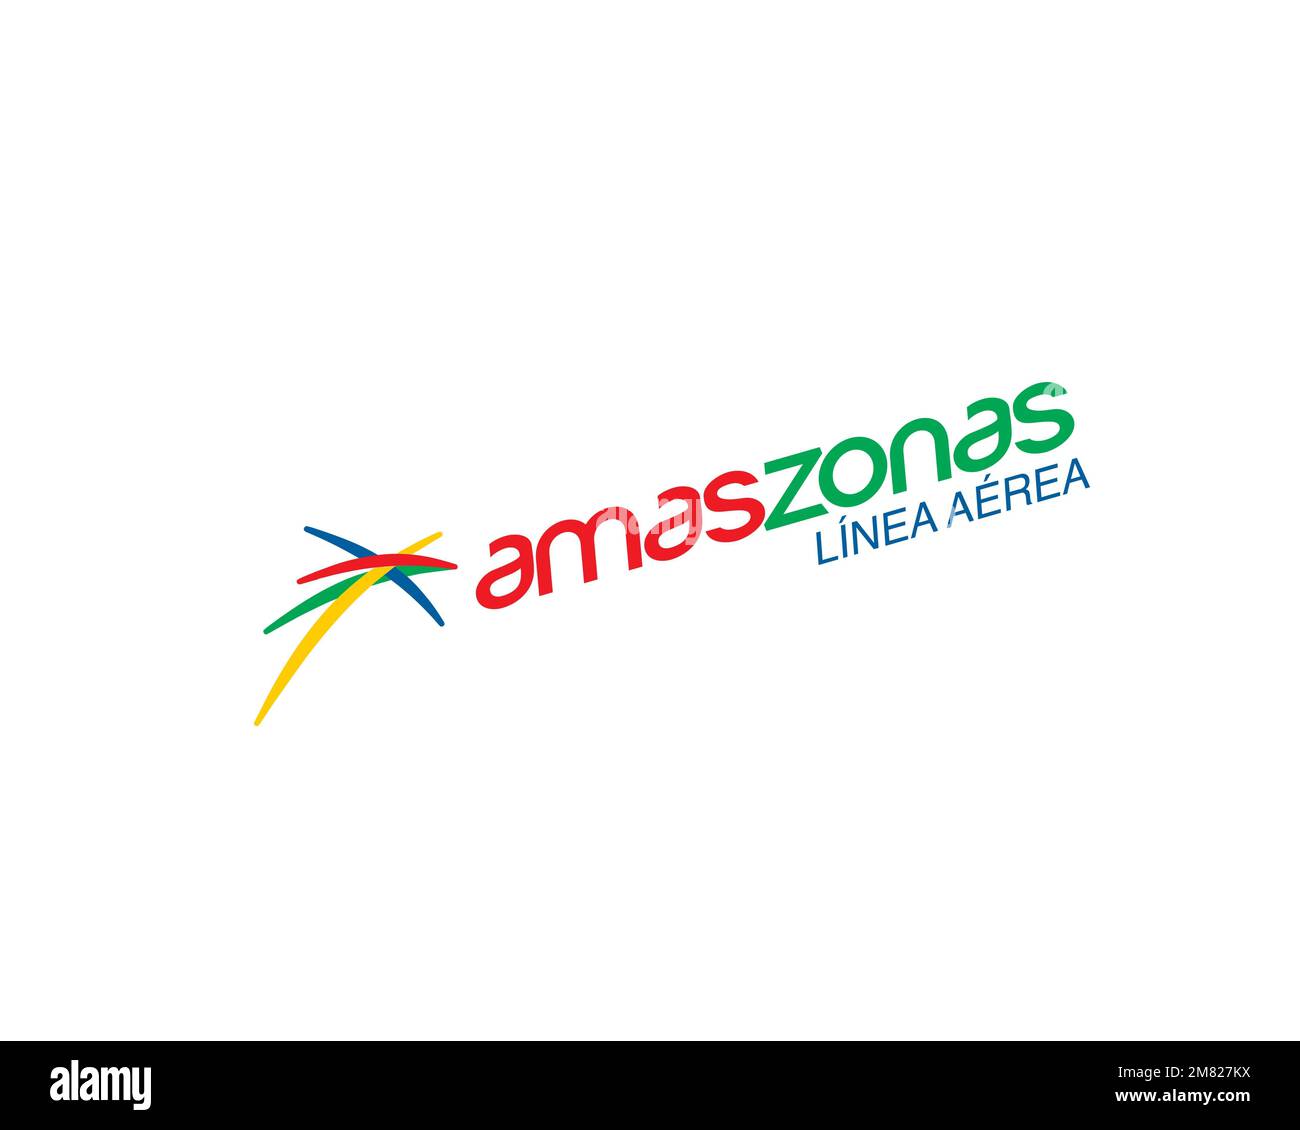 Linea Aerea Amaszonas, logo pivoté, fond blanc Banque D'Images